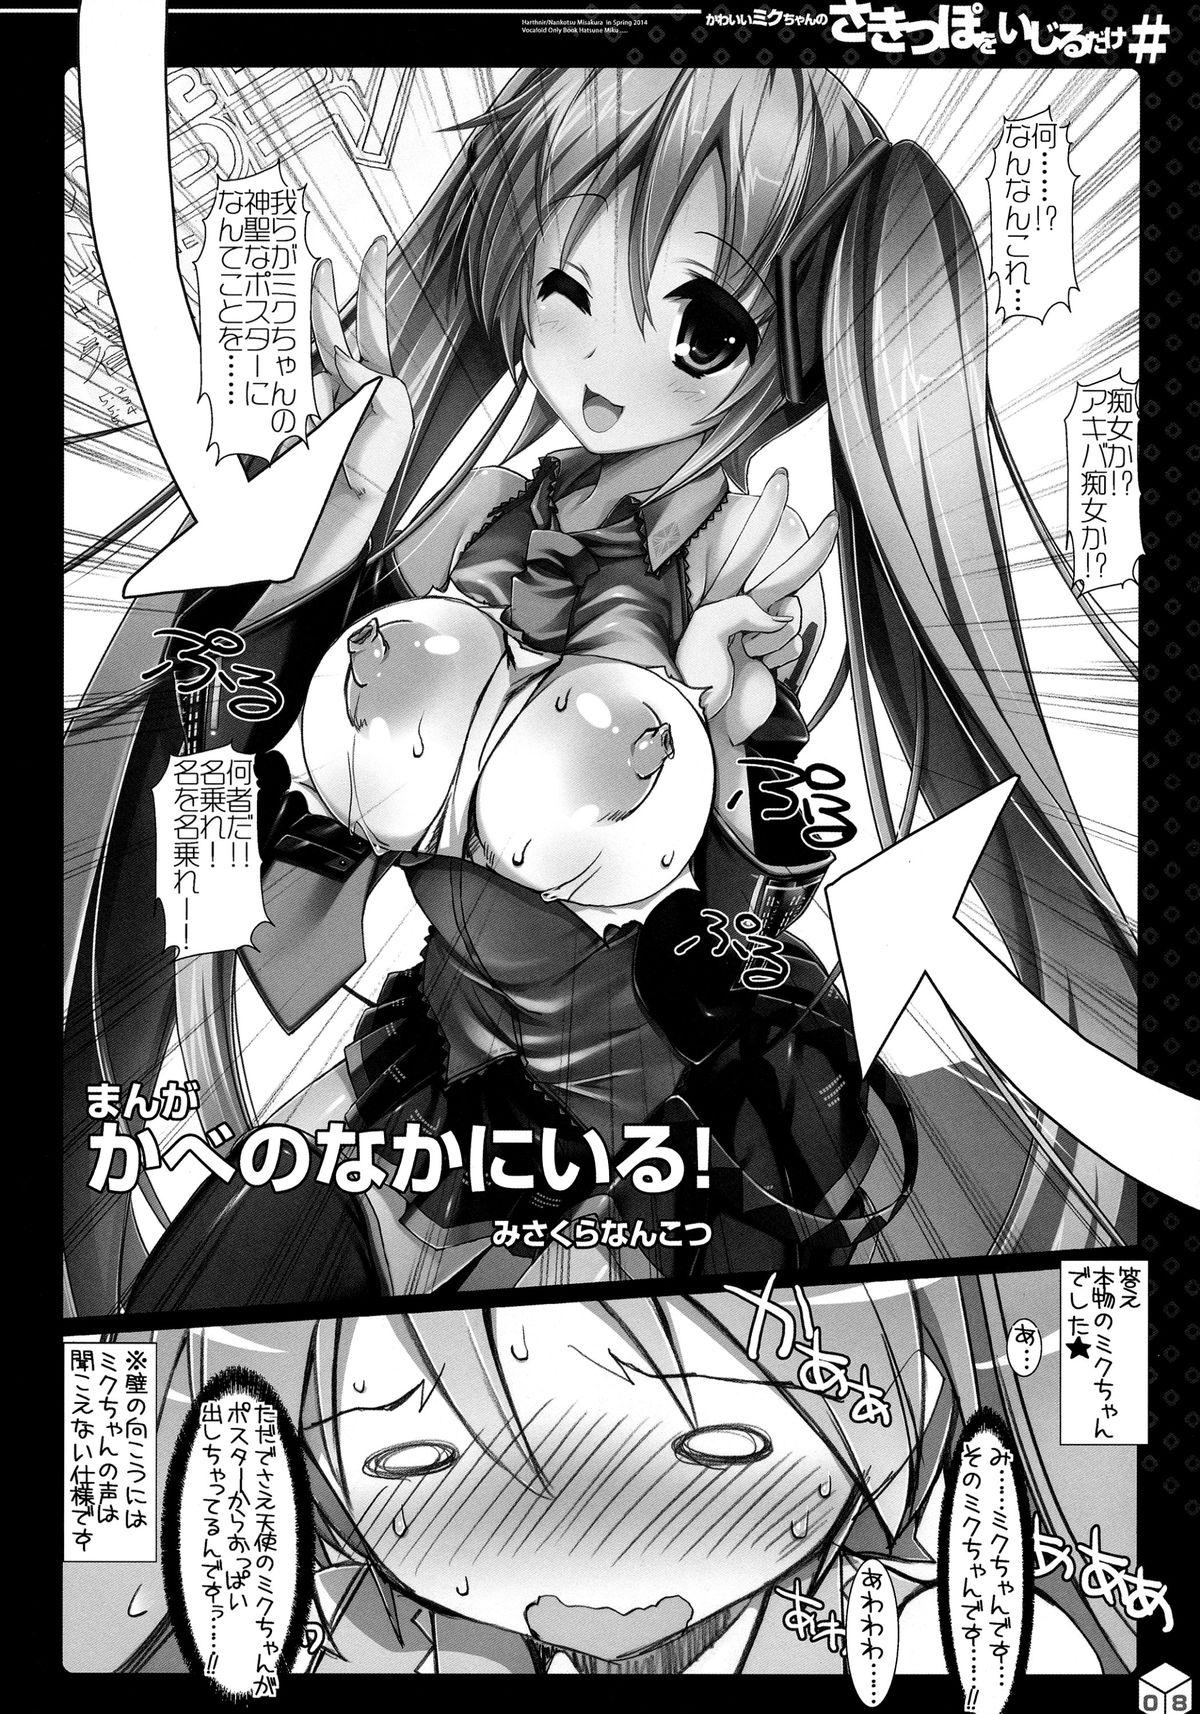 8teenxxx Kawaii Miku-chan no Sakippo wo Ijiru dake# - Vocaloid Milf Porn - Page 6